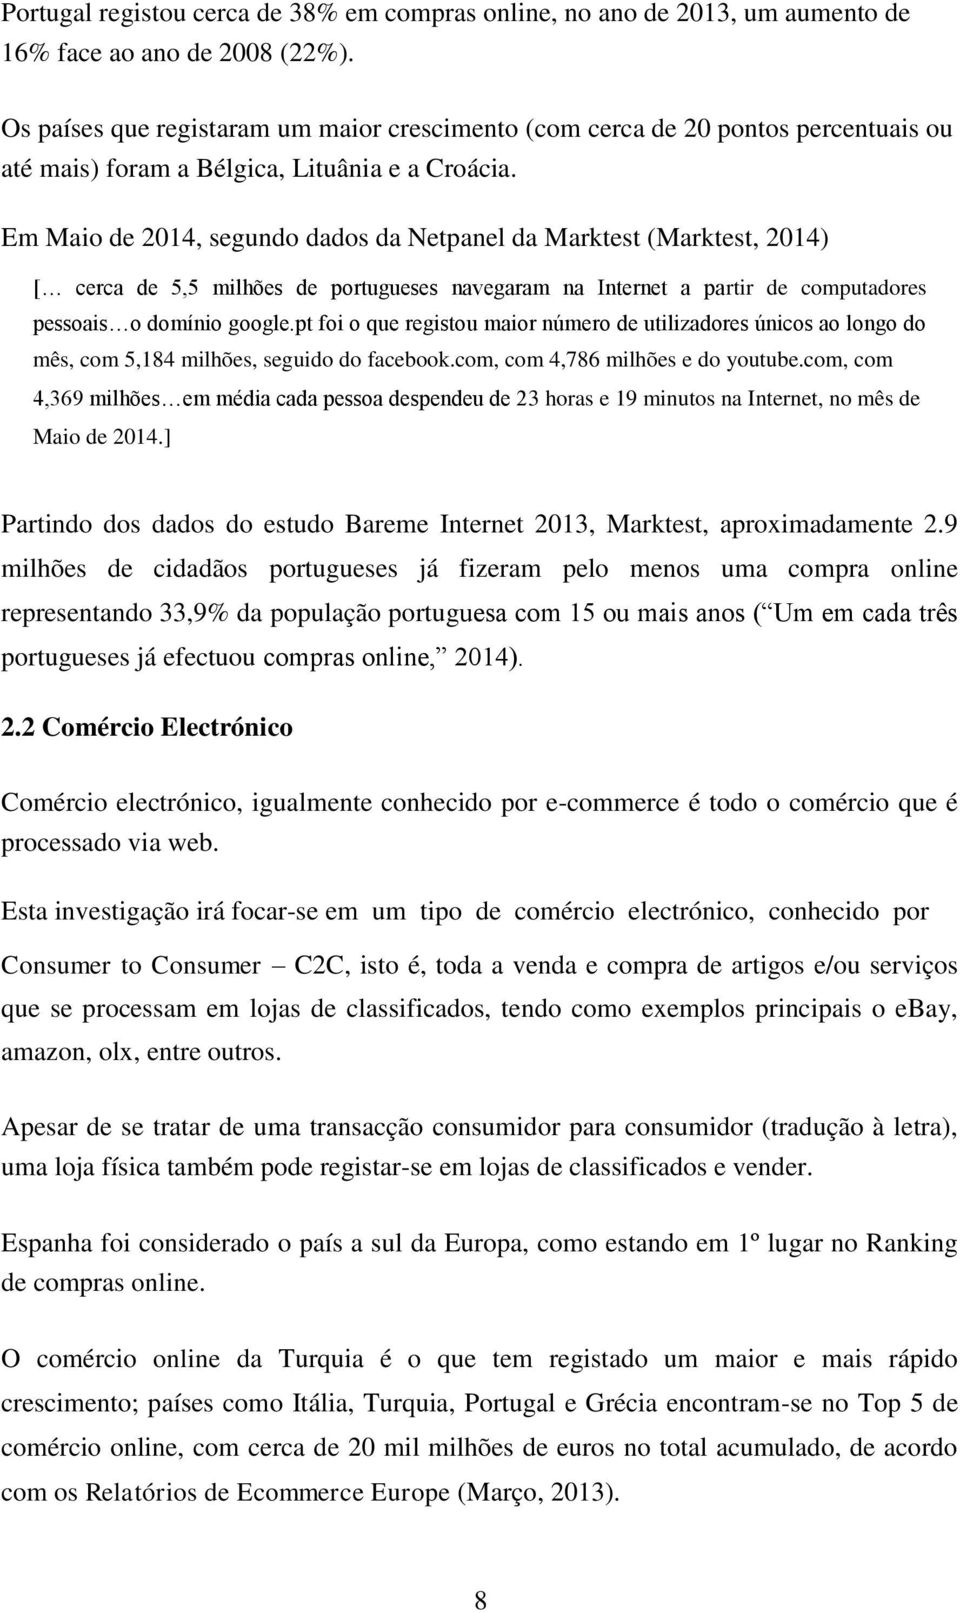 Em Maio de 2014, segundo dados da Netpanel da Marktest (Marktest, 2014) [ cerca de 5,5 milhões de portugueses navegaram na Internet a partir de computadores pessoais o domínio google.